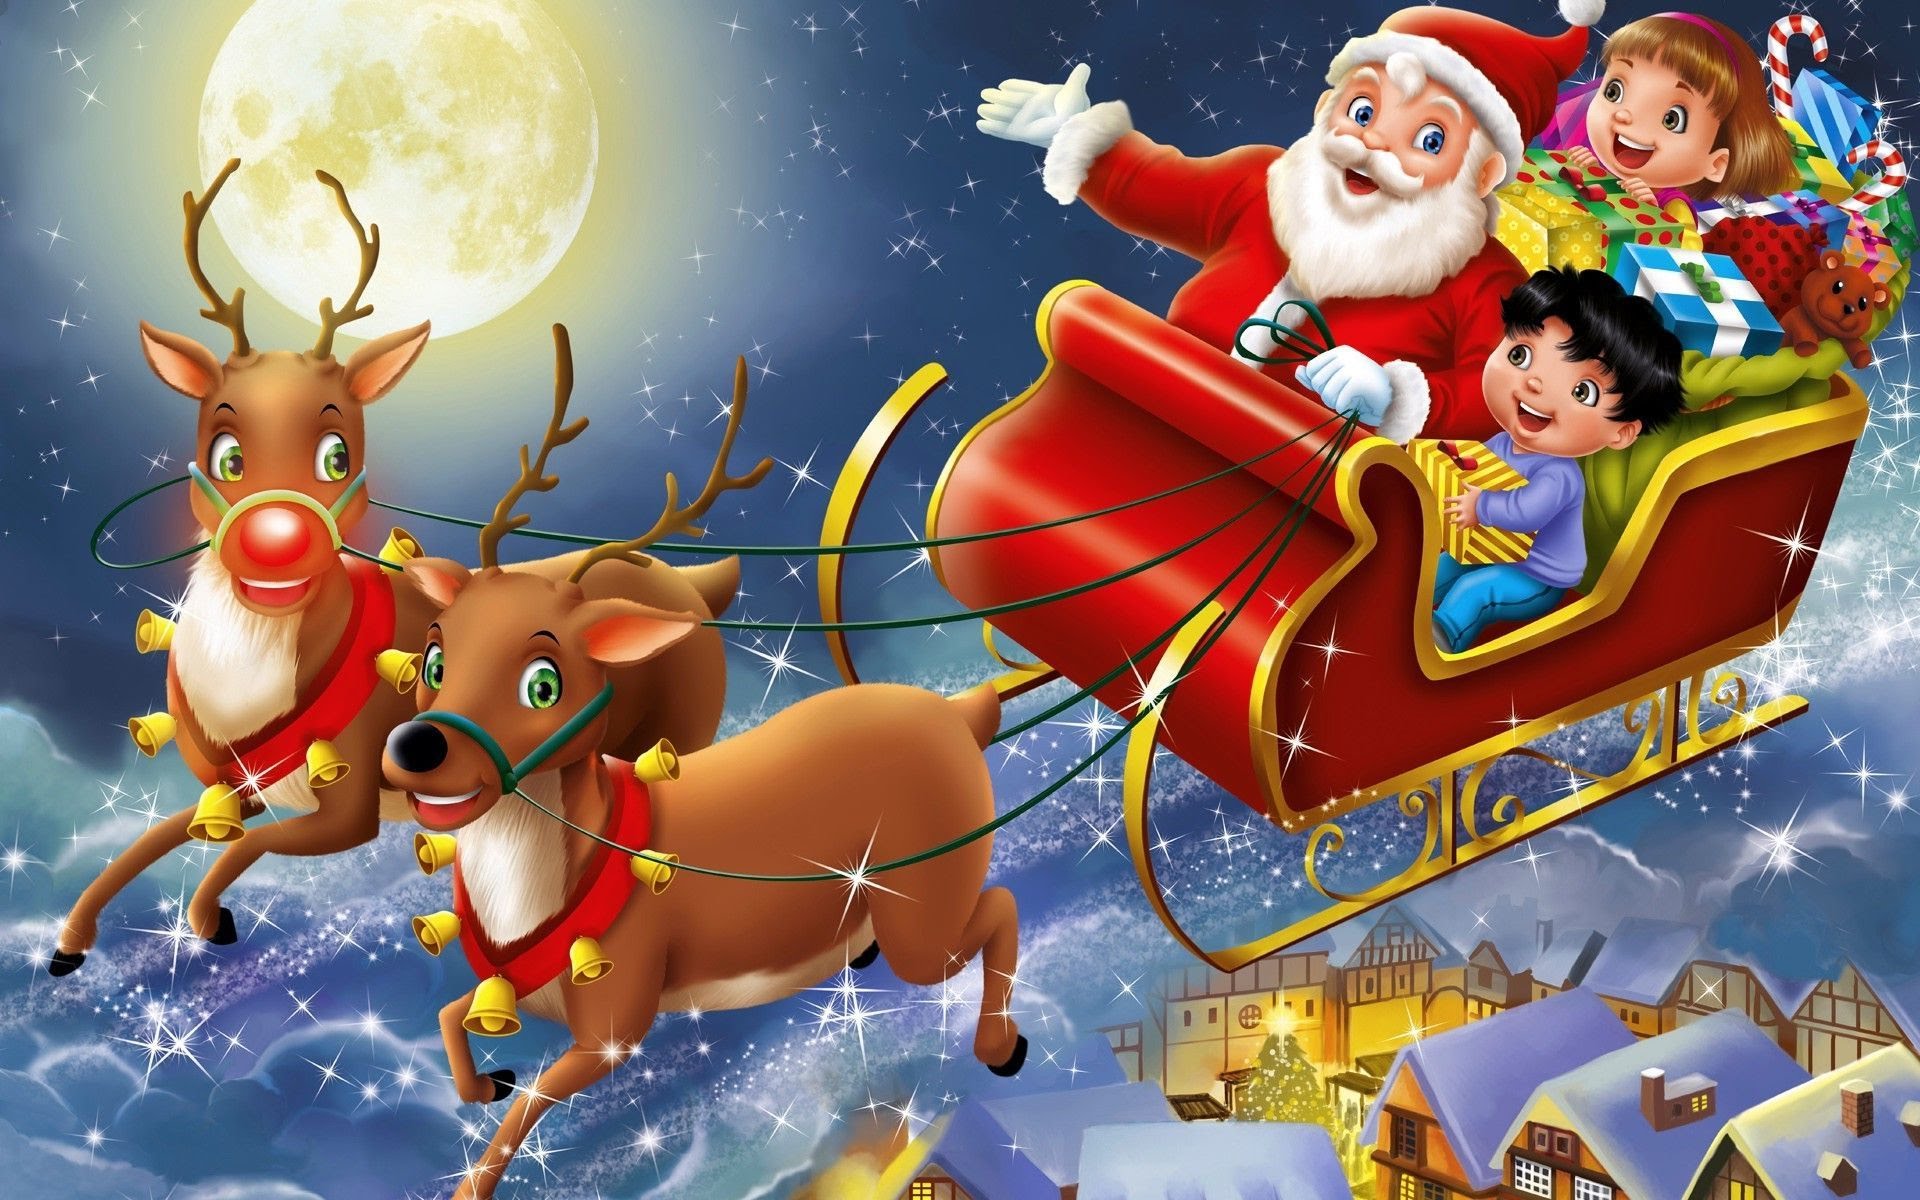 Chủ đề Ông già Noel luôn là đề tài được yêu thích trong mùa lễ hội Giáng sinh. Những hình ảnh Ông già Noel với trang phục đỏ truyền thống, túi đầy quà tặng, sẽ khiến bạn thích thú. Hãy nhấn vào ảnh liên quan đến từ khóa này để xem thật nhiều bức ảnh độc đáo về Ông già Noel.